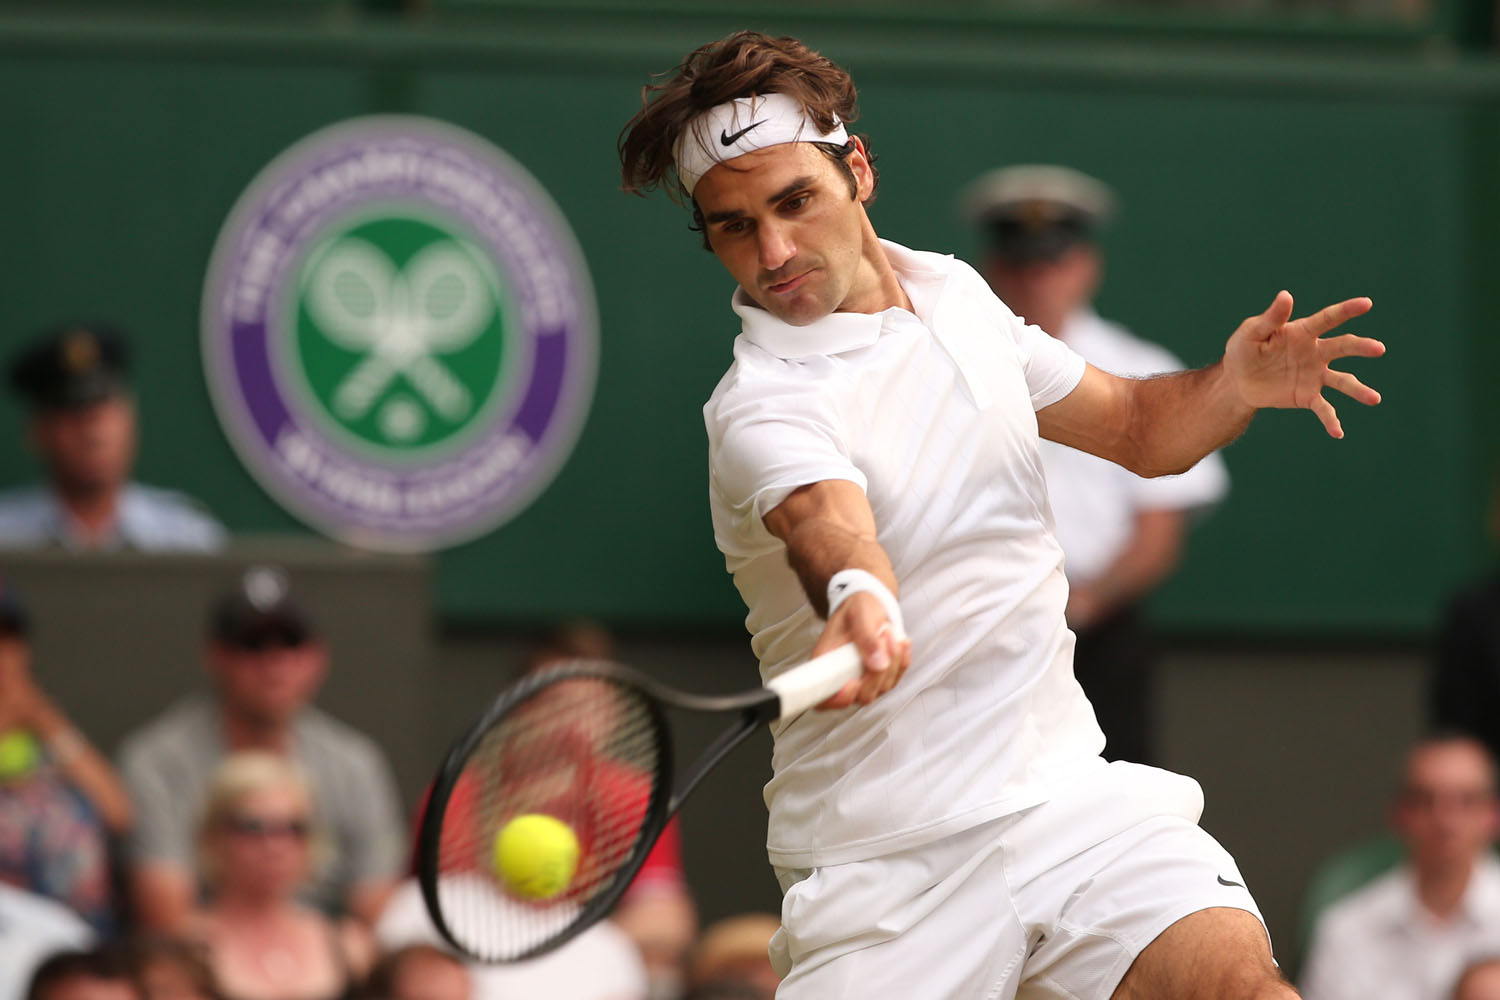 The enthralling Roger Federer